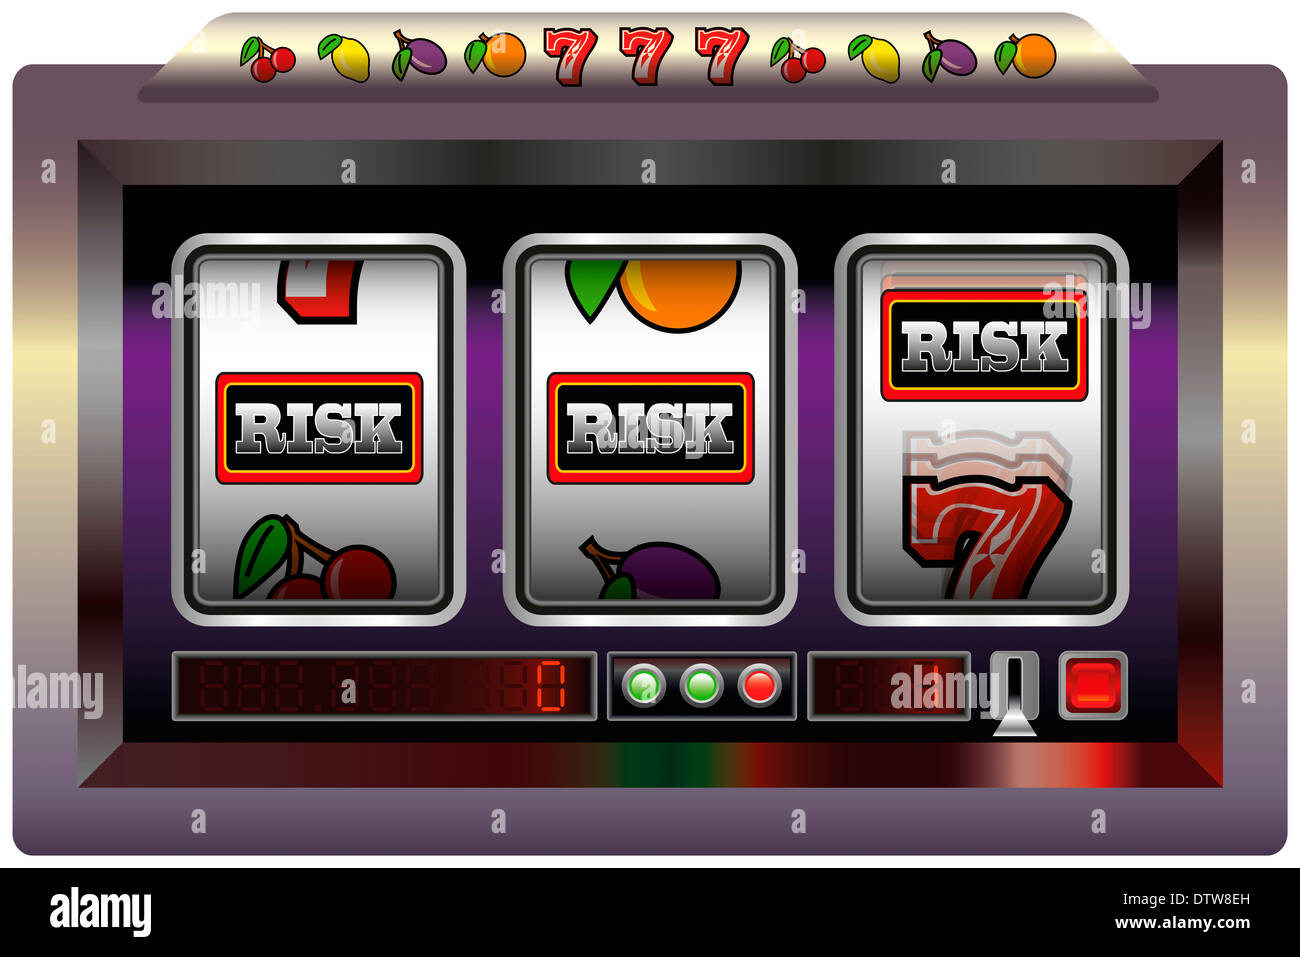 Beispiel für ein Spielautomat mit drei Walzen, Spielautomat Symbolen und Schriftzügen Risiko. Stockfoto